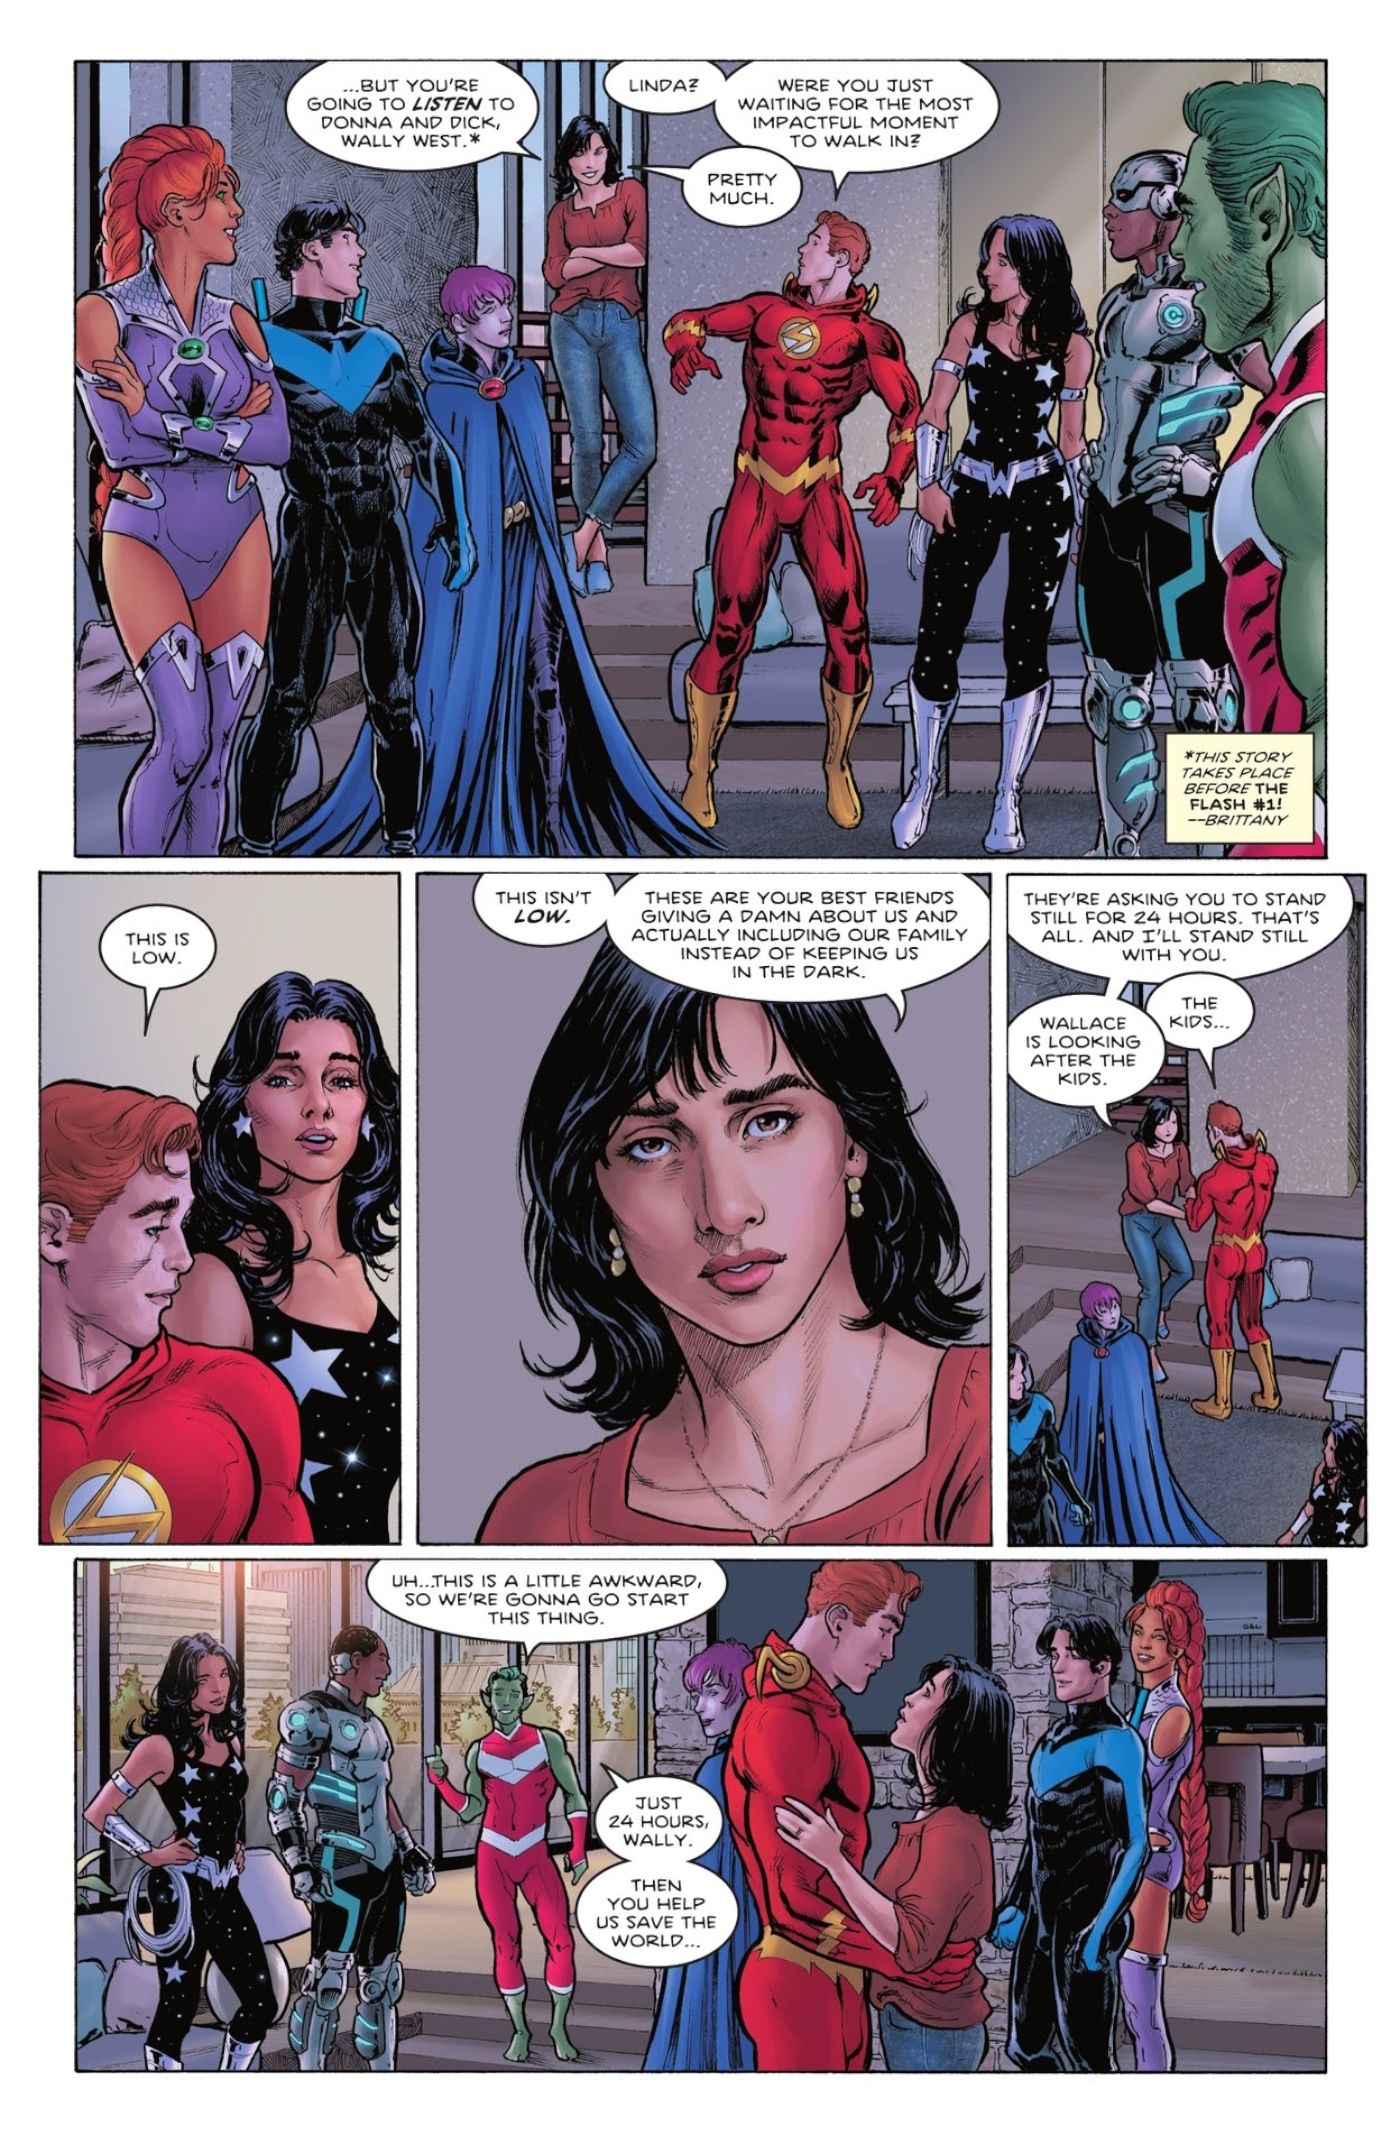 Nightwing ruft Wallys Frau als Ersatz für Titans #4 an